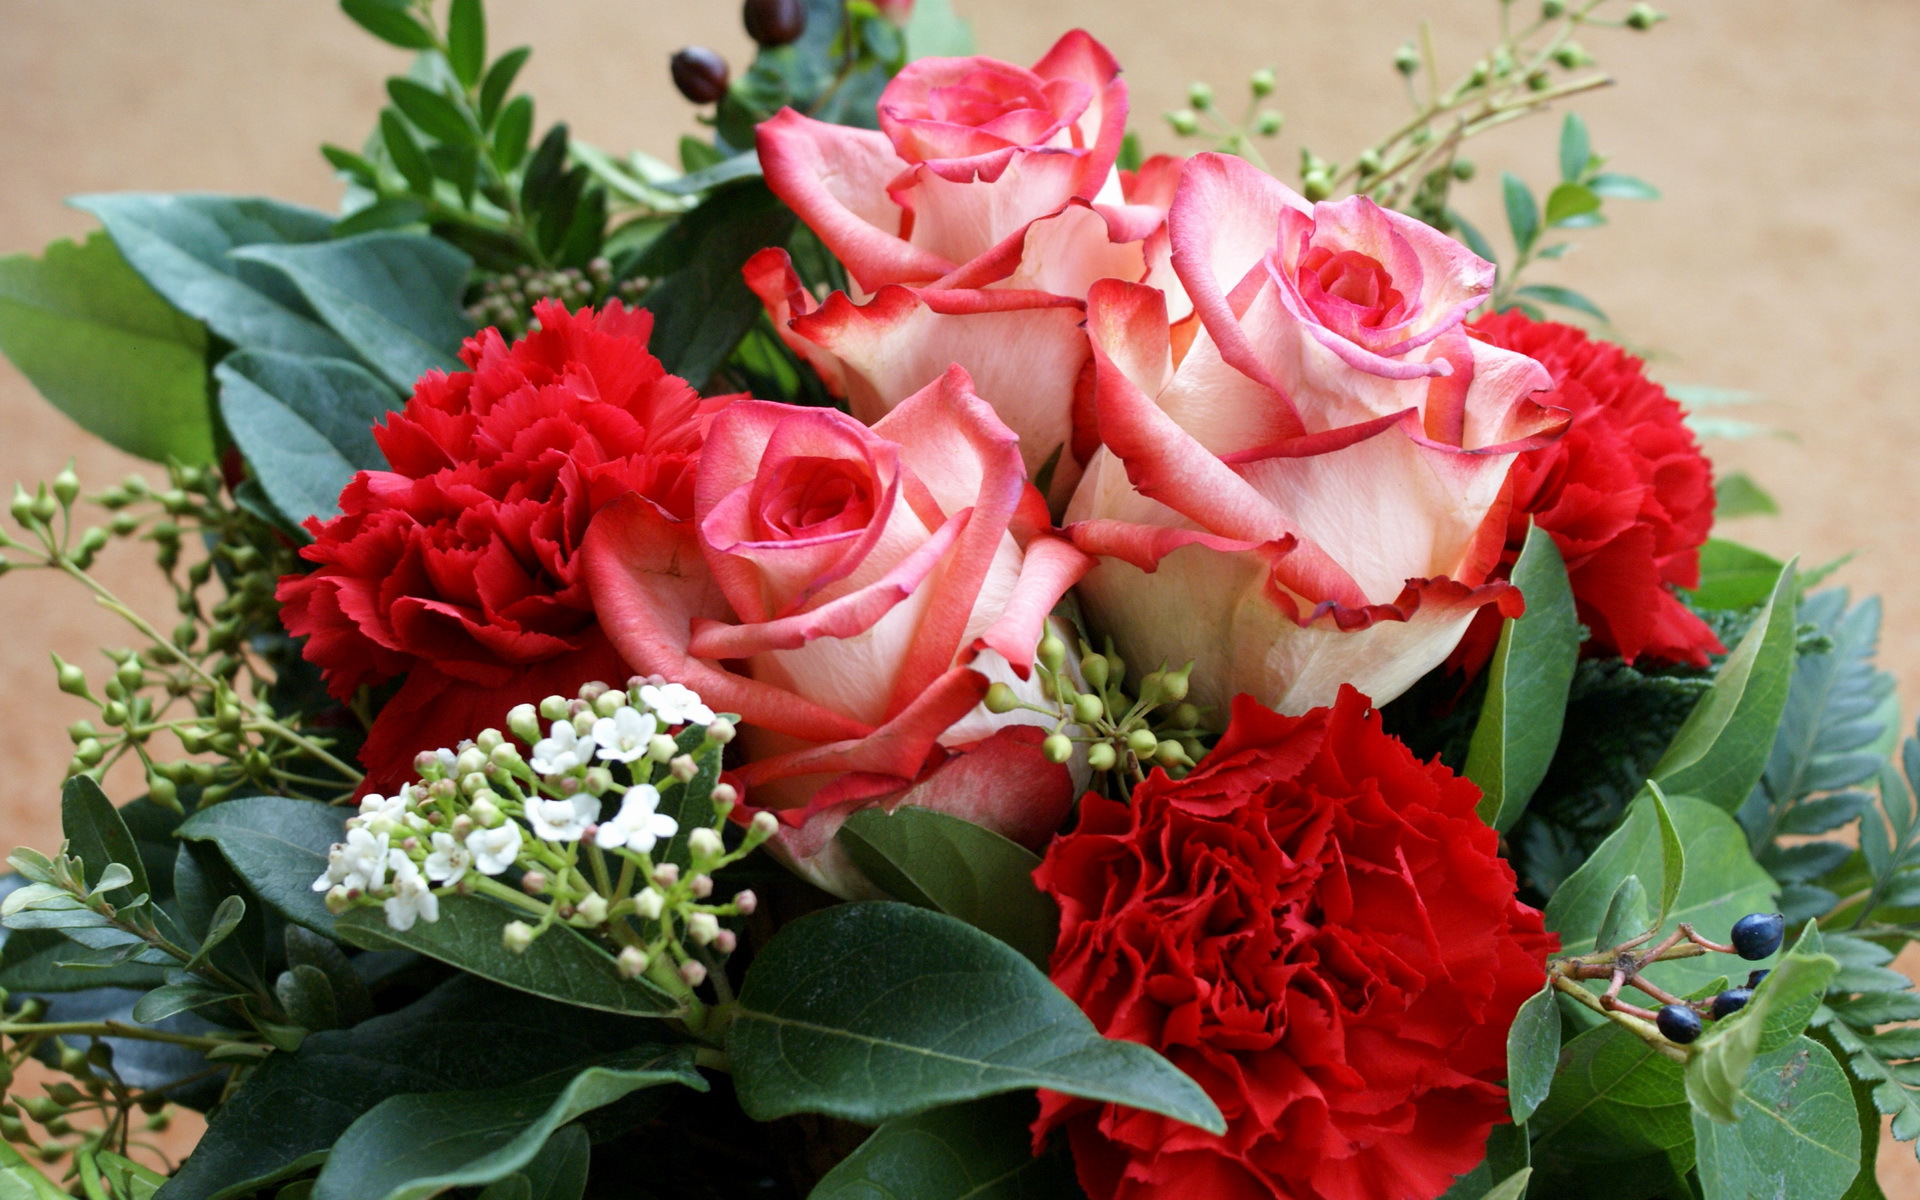 bouquets, roses, plants, flowers